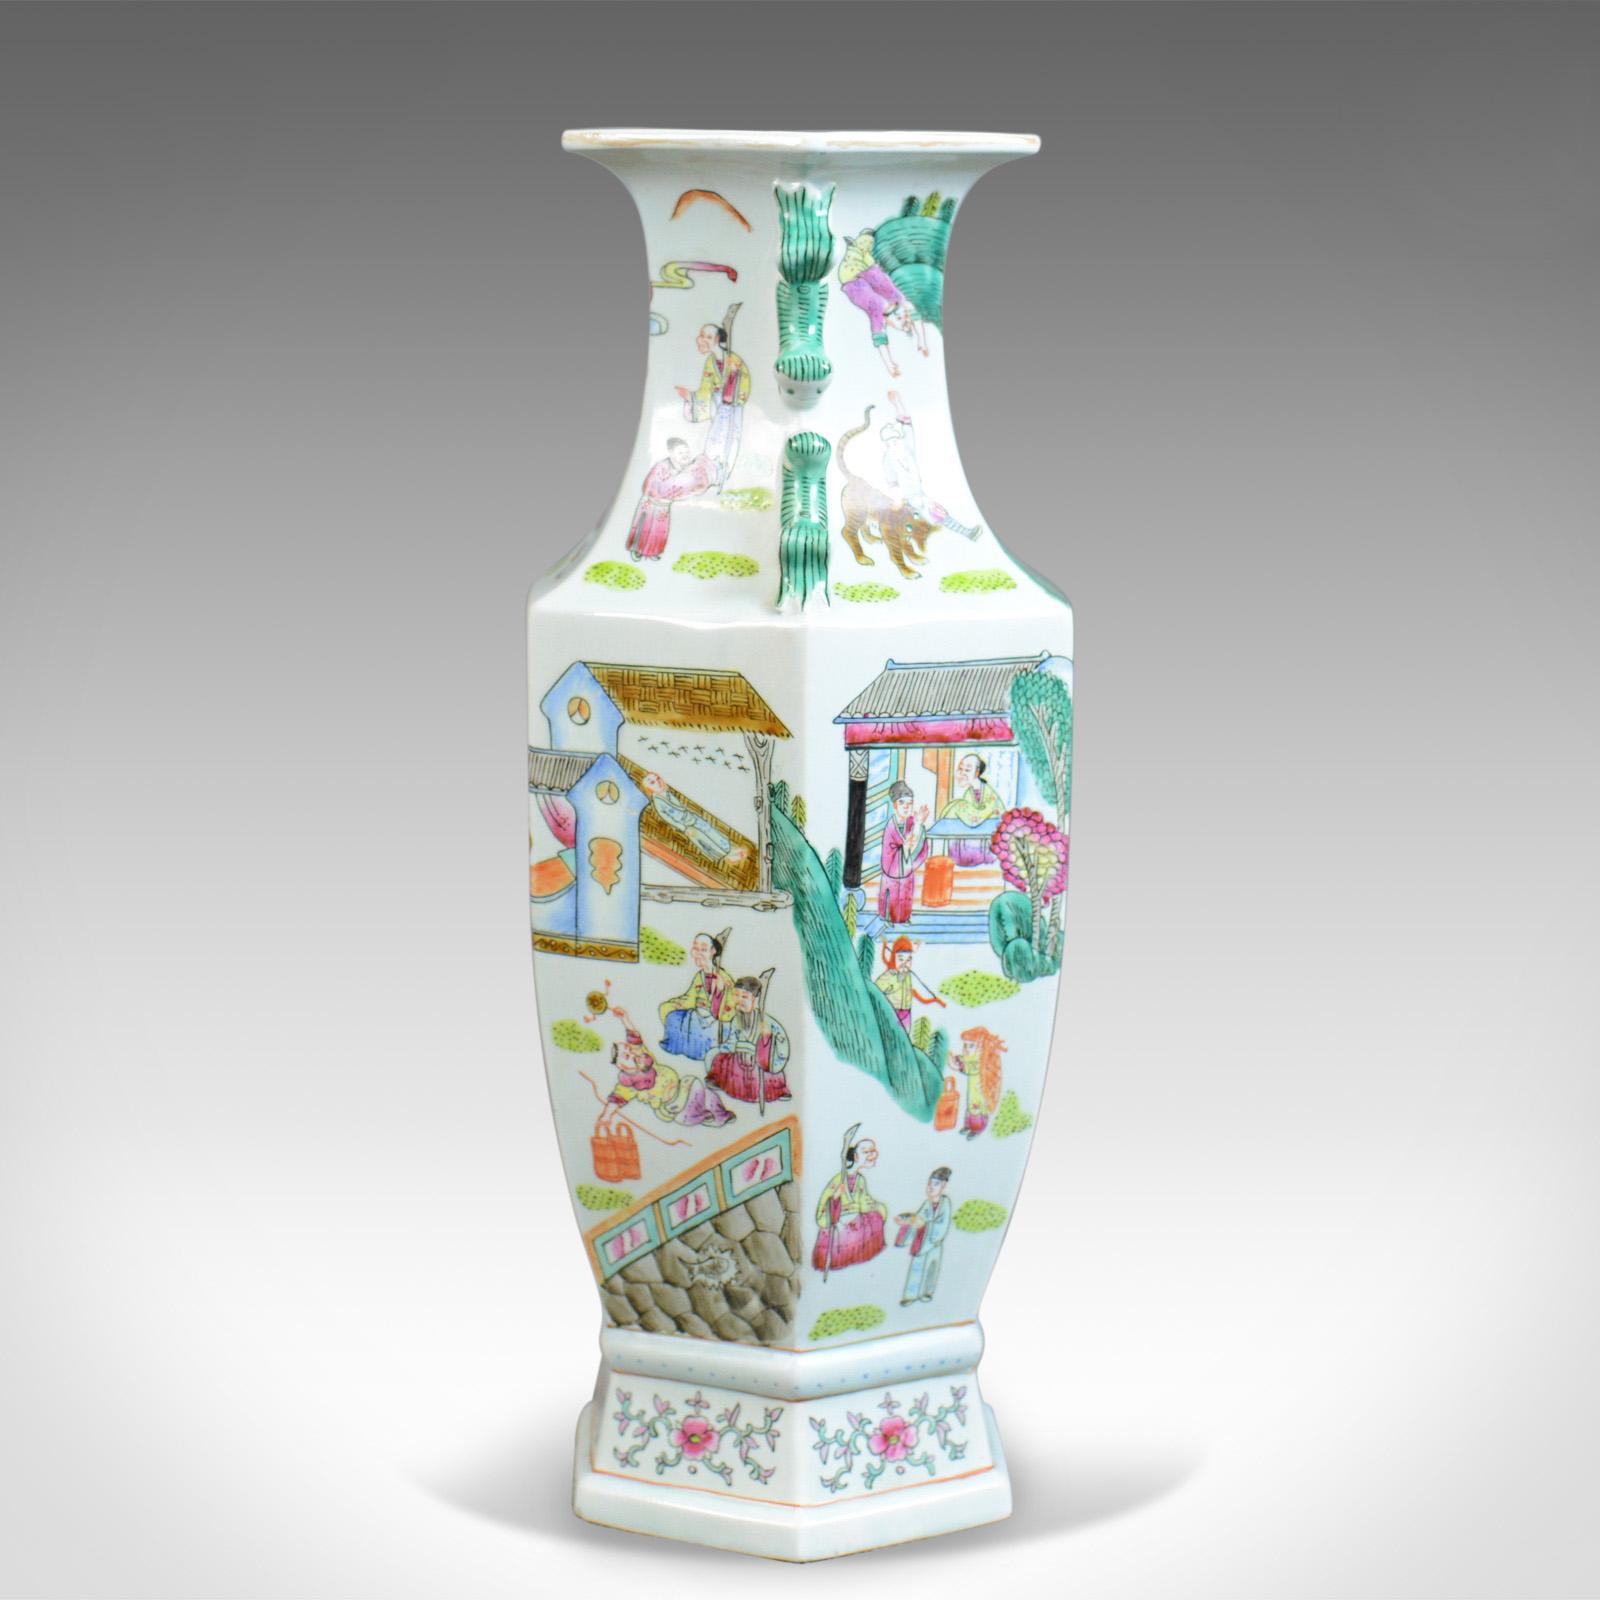 Dies ist eine sechseckige Balustervase aus der Mitte des 20. Jahrhunderts, eine chinesische Keramikurne. 

Attraktive chinesische Balustervase
Reichlich verziert vom Hals bis zum Boden
Frei von Beschädigungen oder Flecken
Unmarkierter